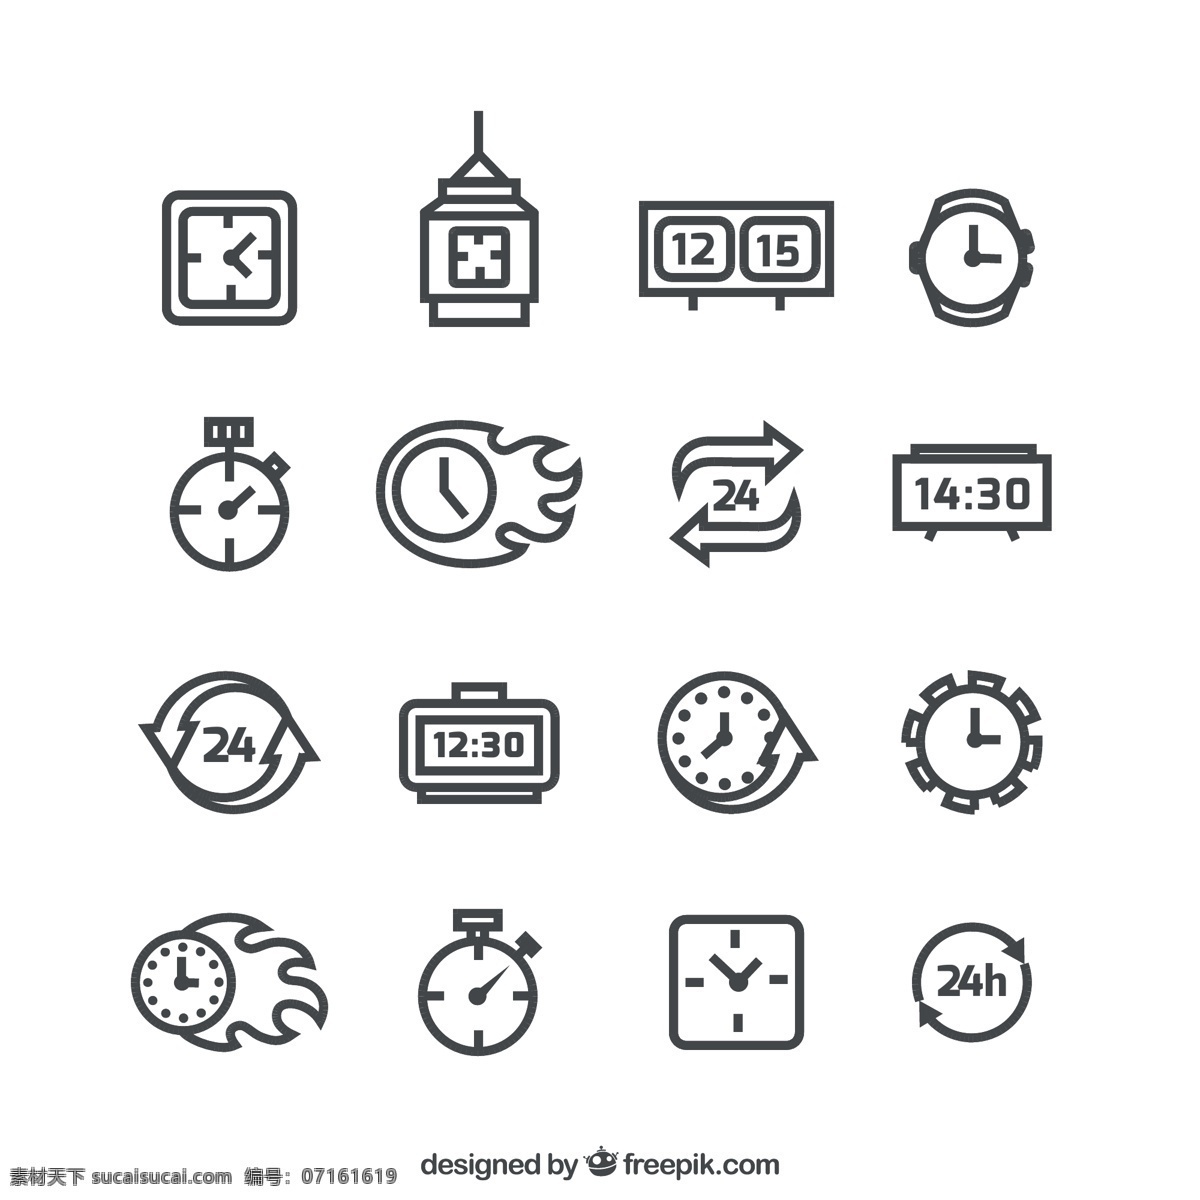 黑色时钟 图标矢量 闹钟 电子时钟 钟表 计时器 时间 图标 挂表 时钟 矢量图 ai格式 标签 标志图标 其他图标